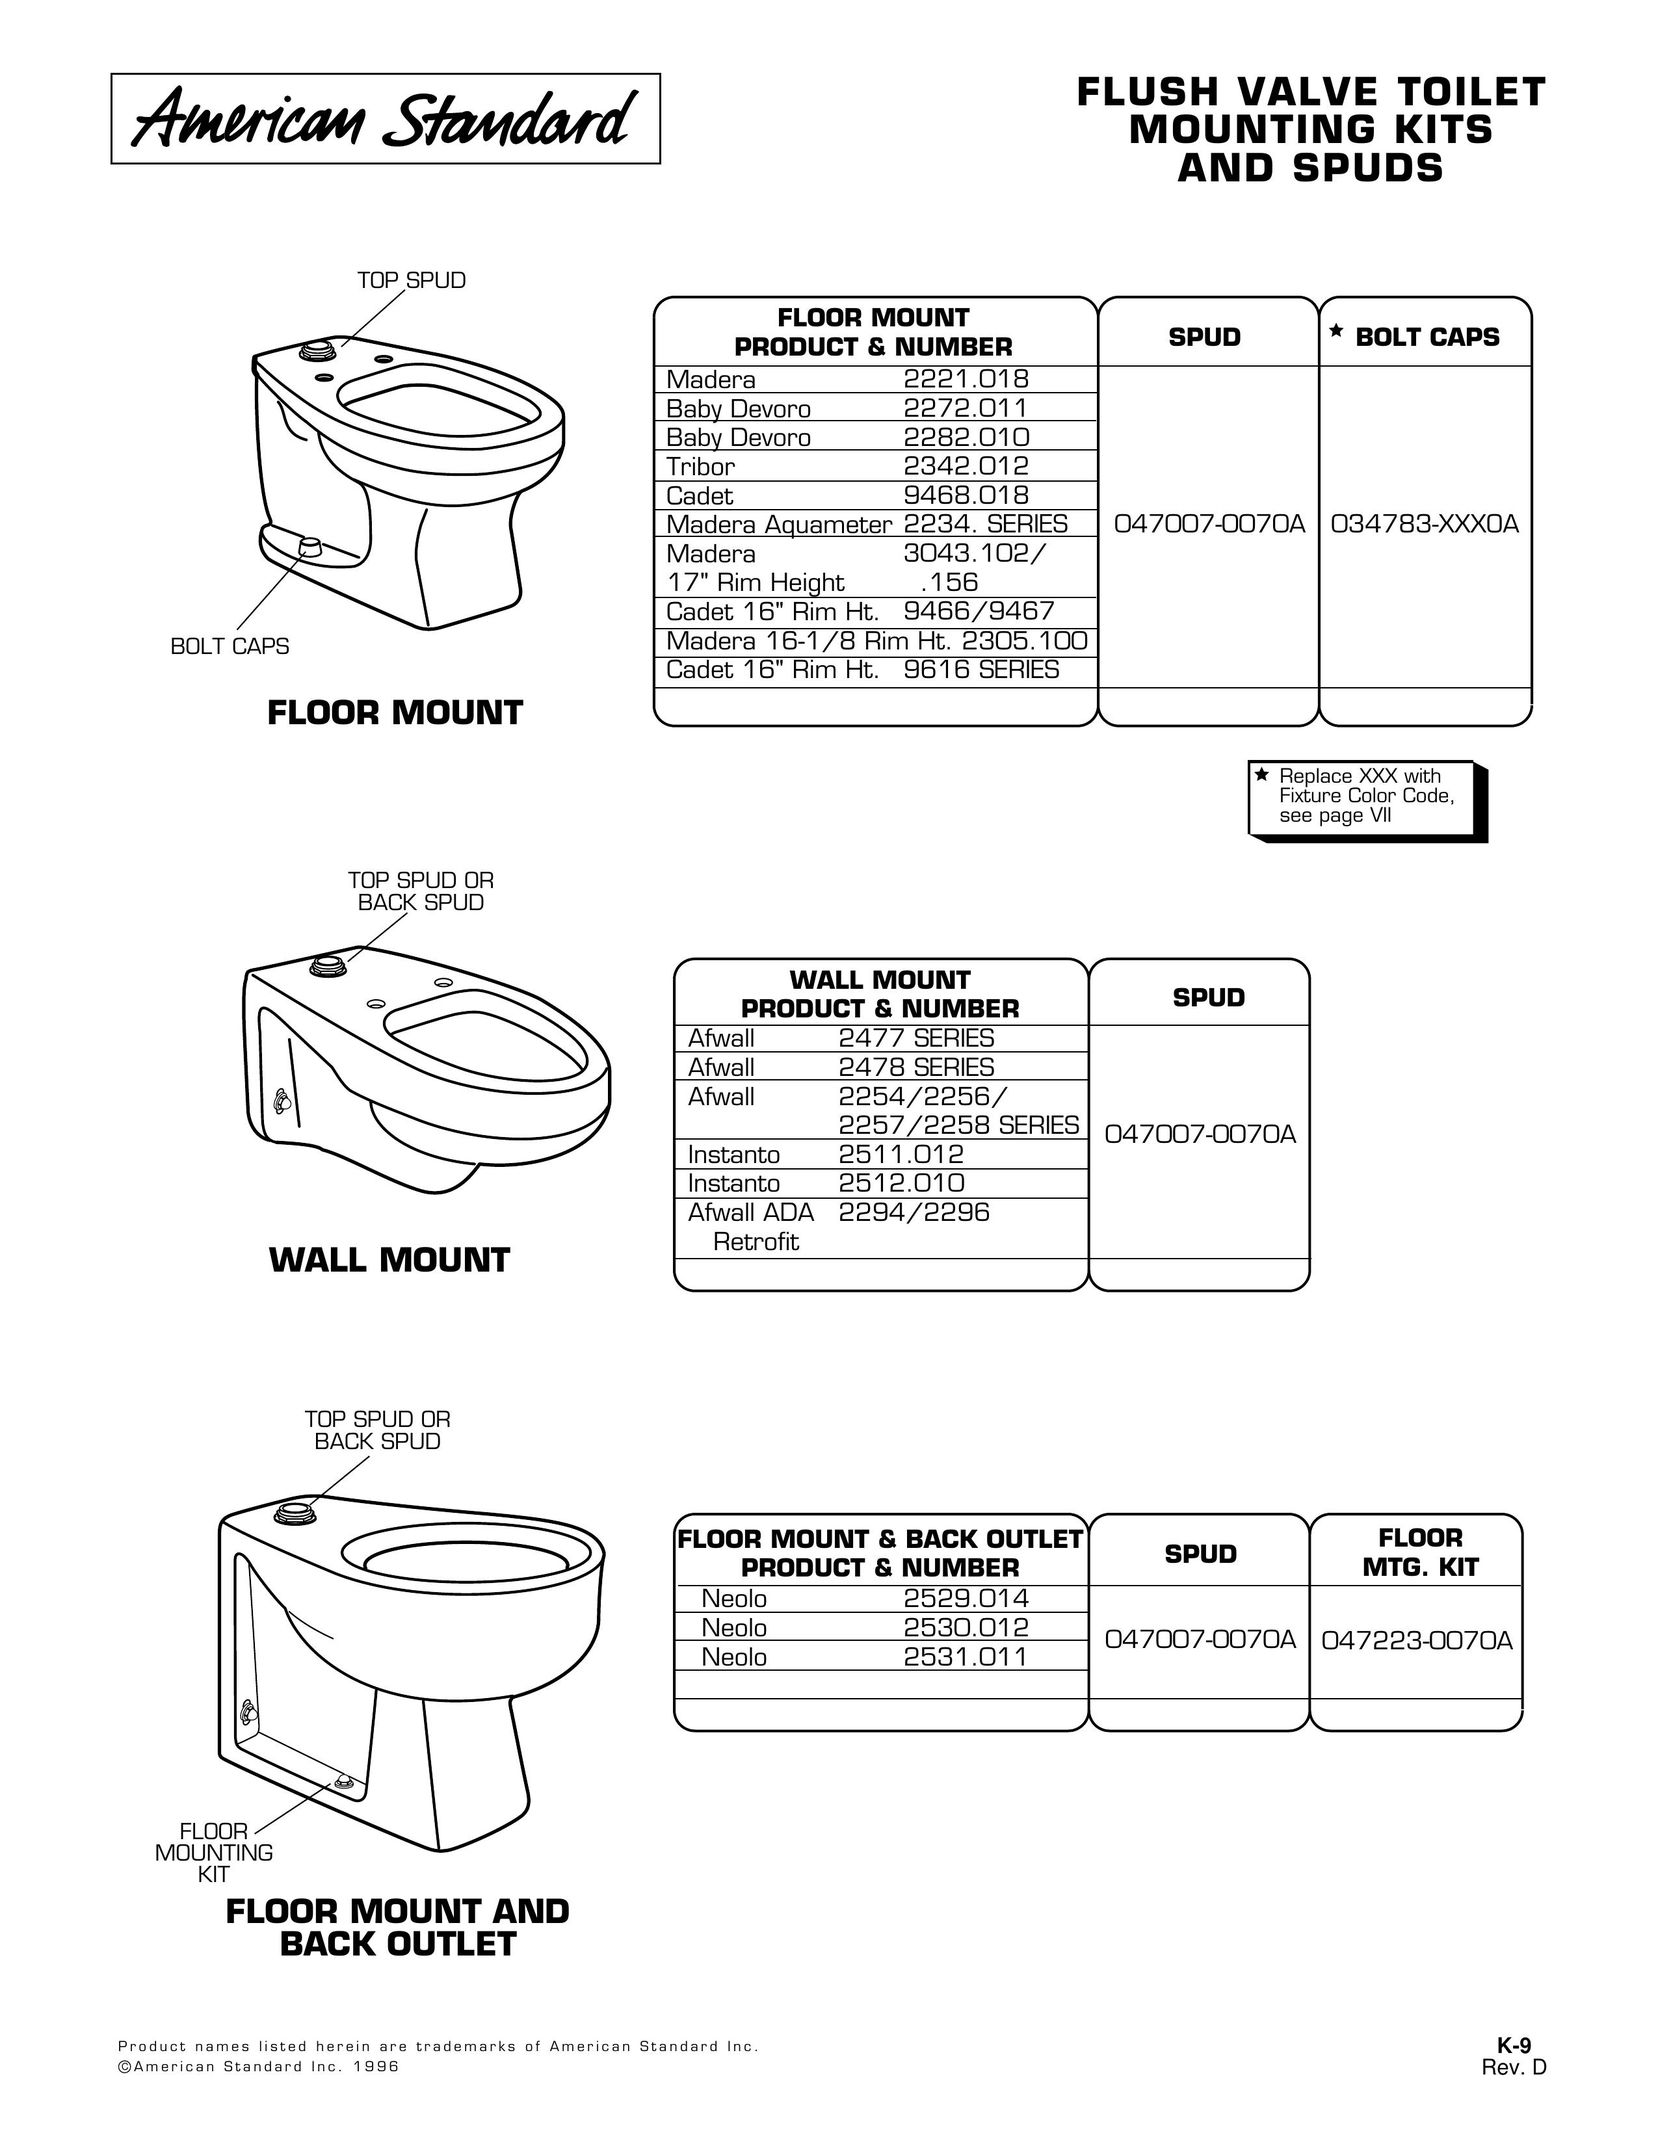 American Standard 2294 Plumbing Product User Manual